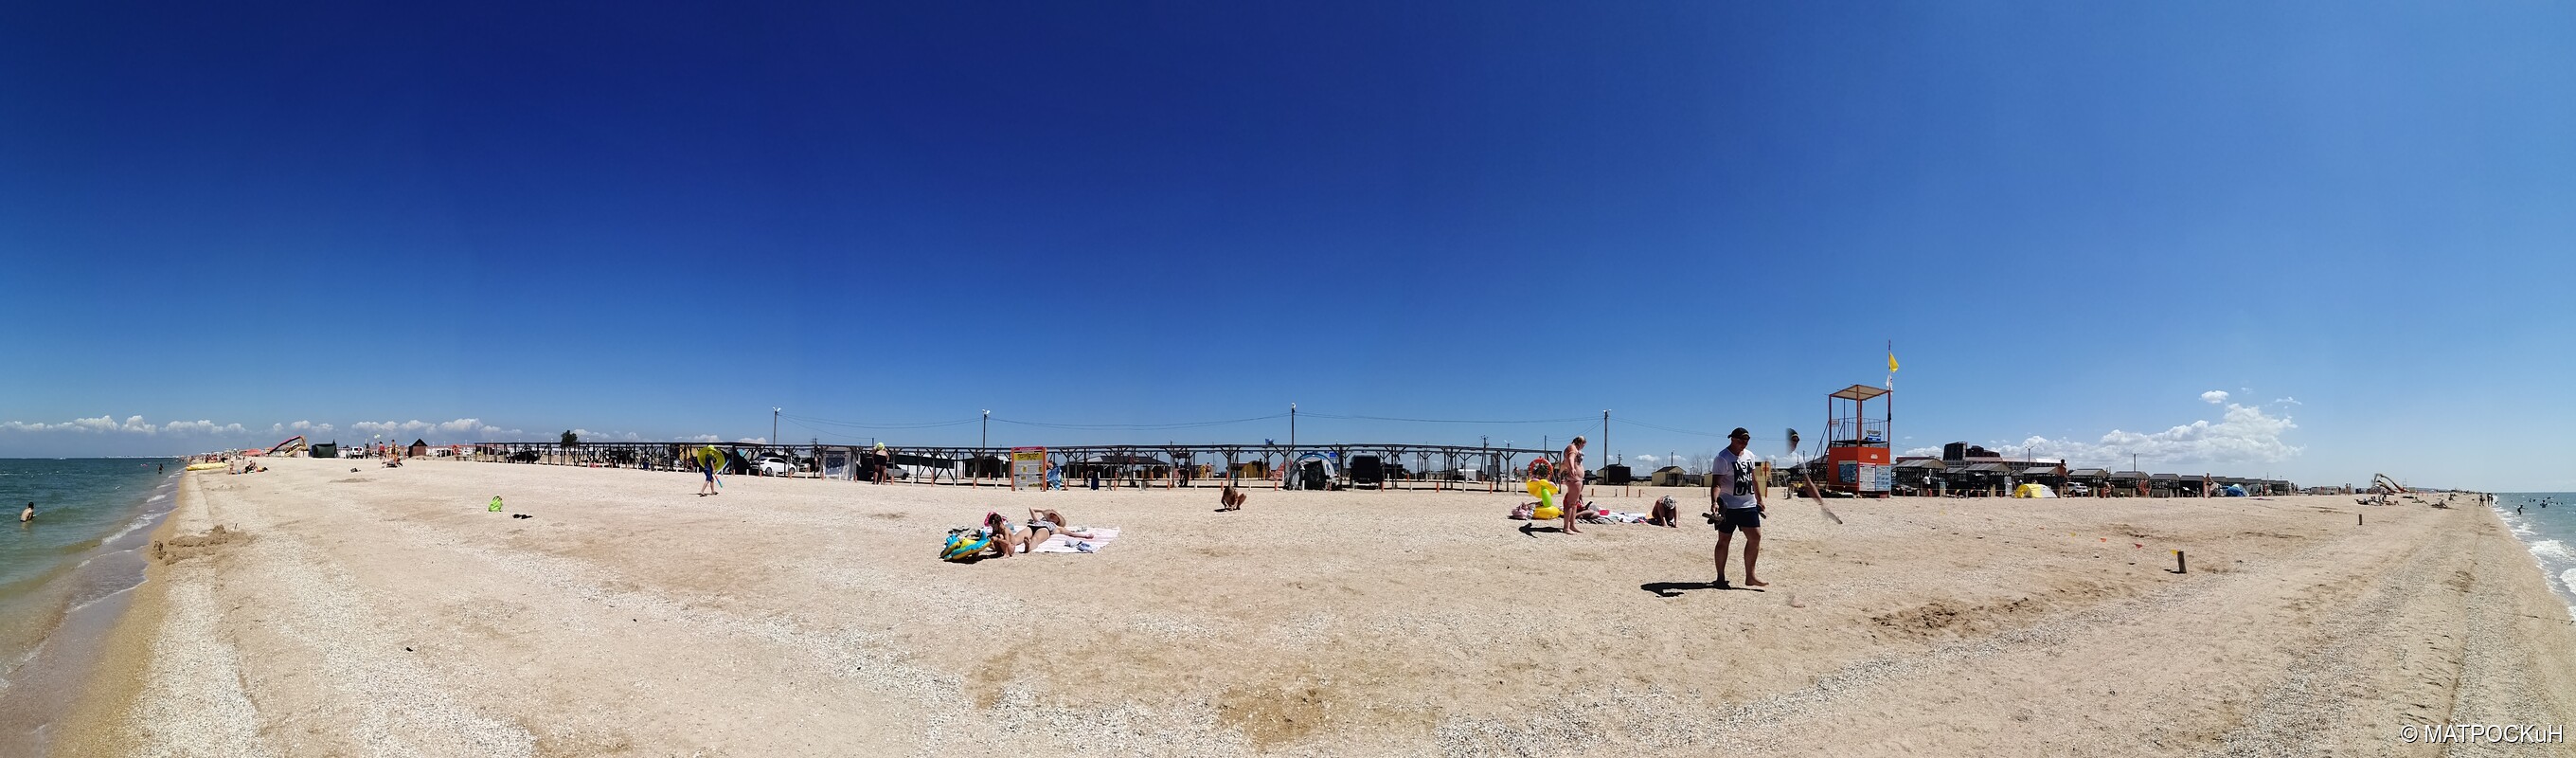 Фотографии -> Поездки -> Отпуск в Должанской (1 - 23 августа 2020) ->  На пляже -> На пляже - 002